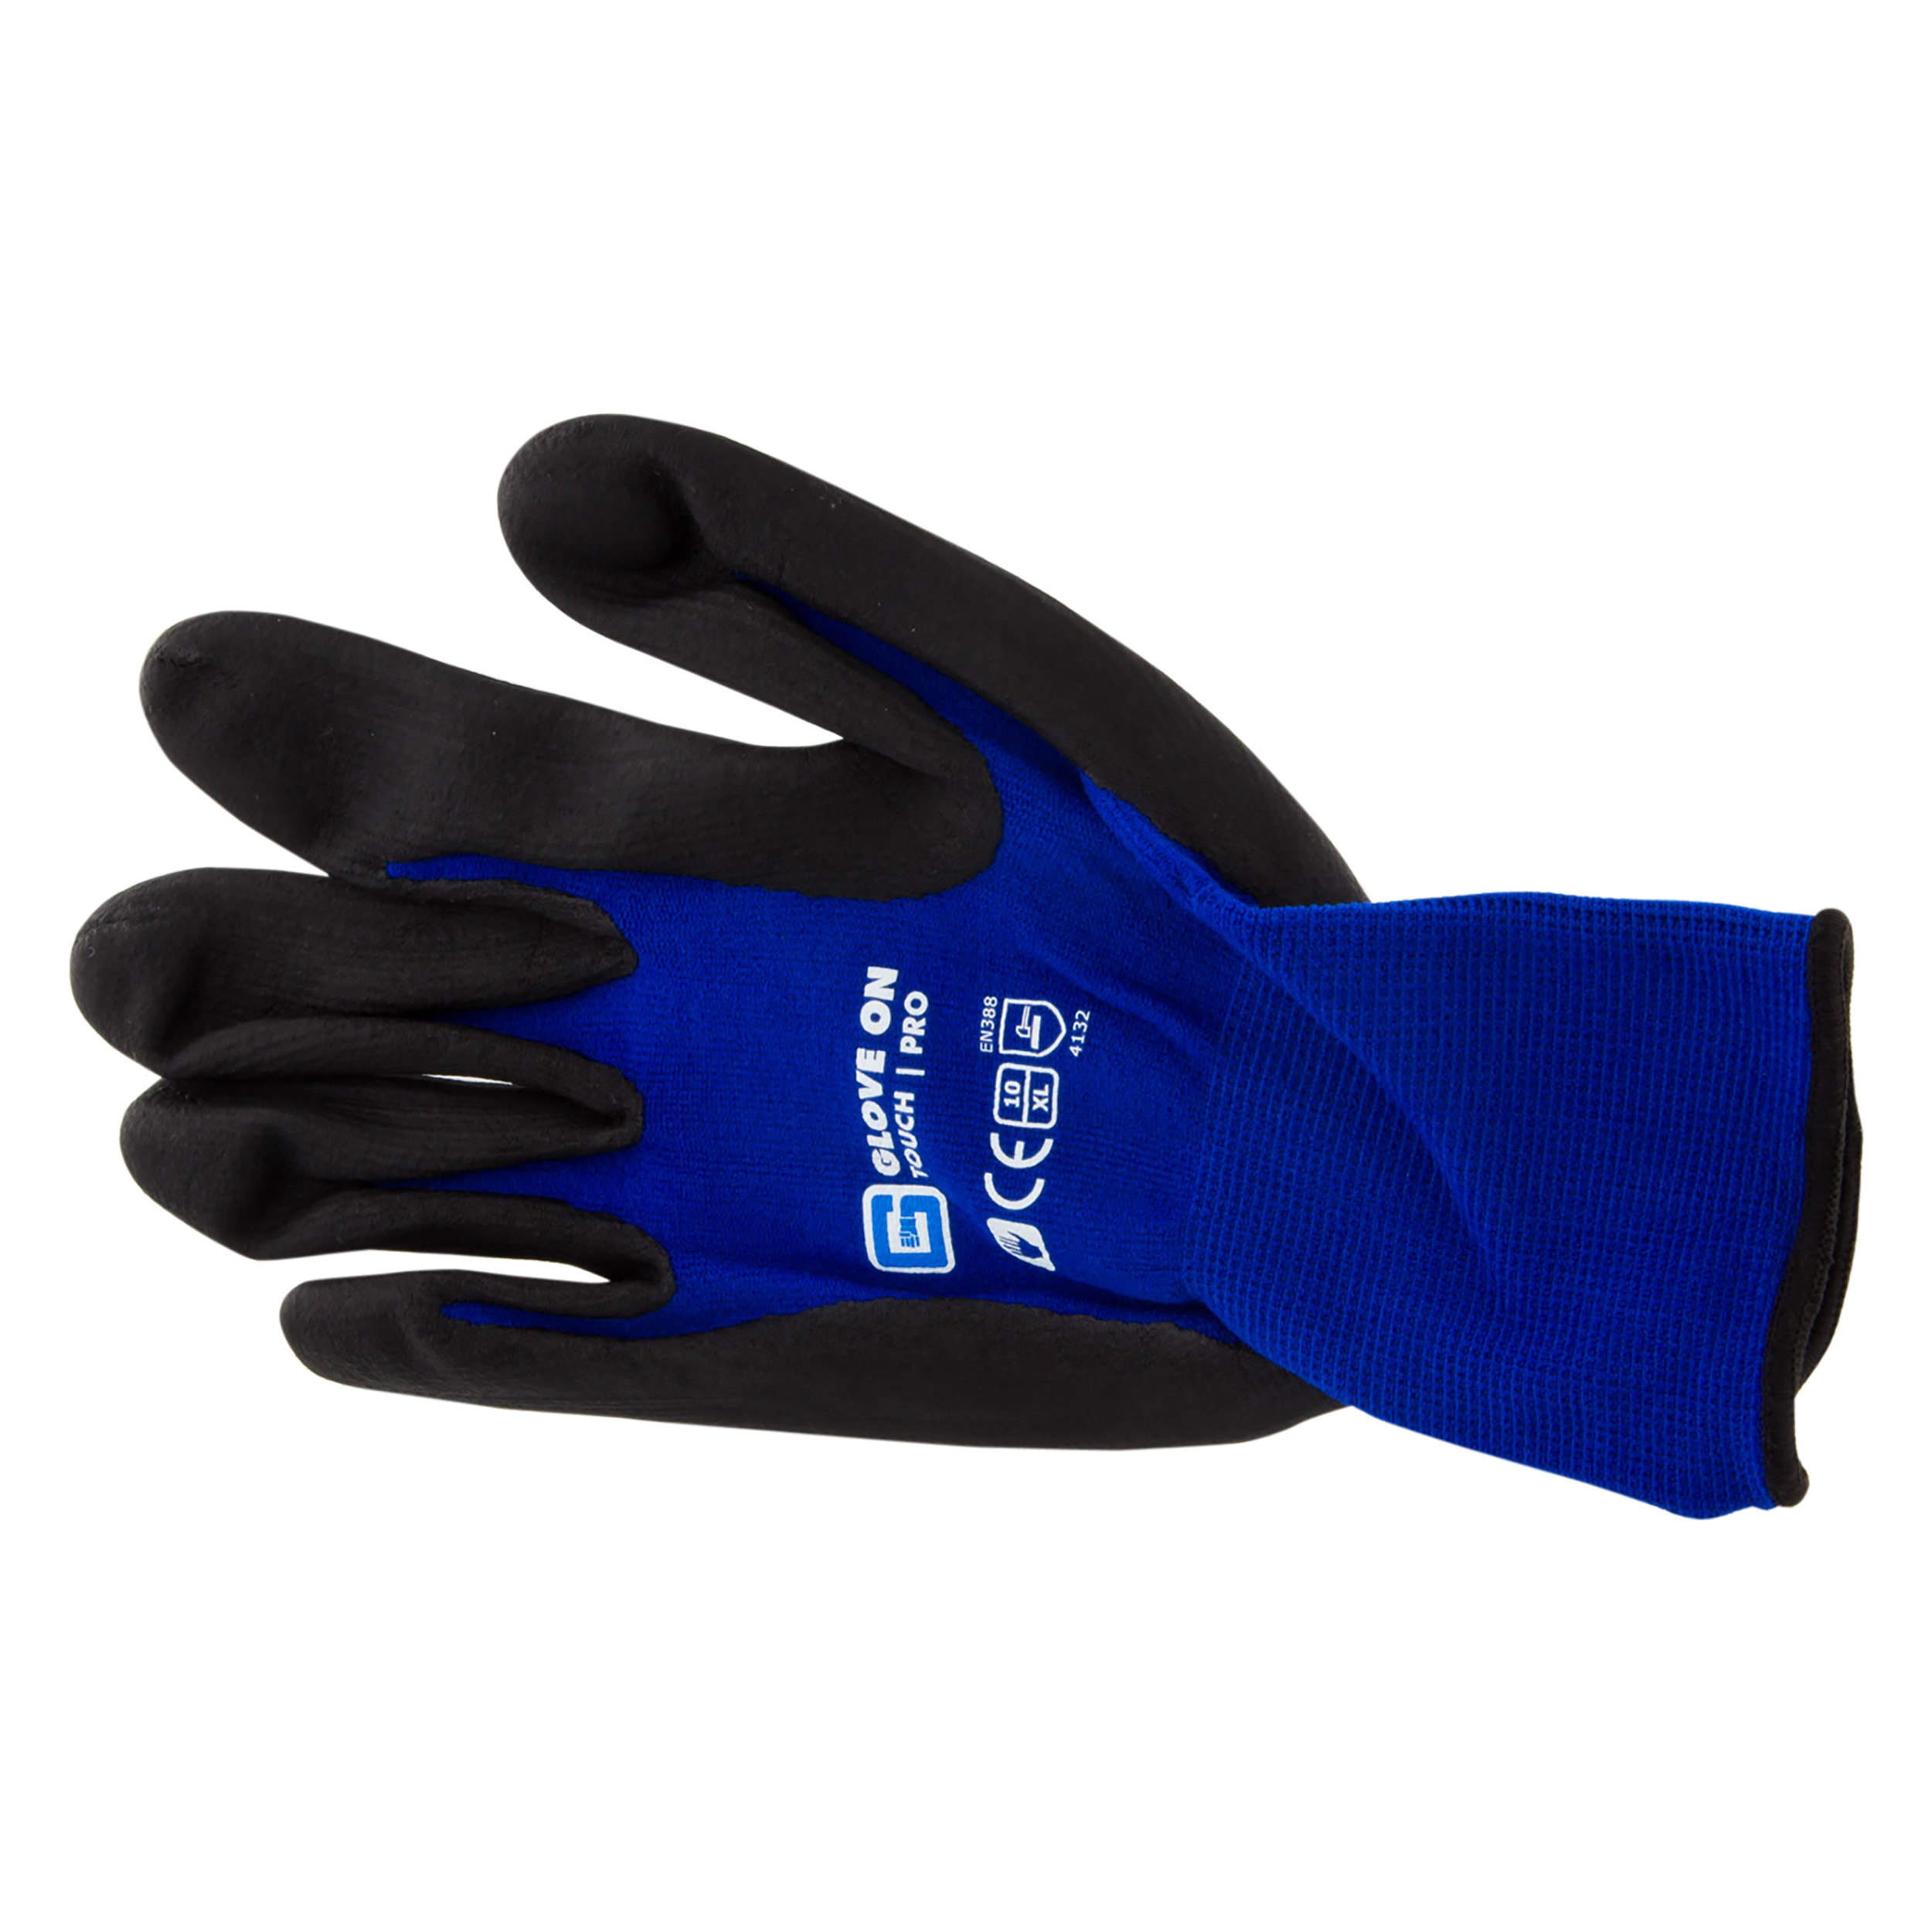 21.080.18 Glove On Touch werkhandschoen touch pro - XL